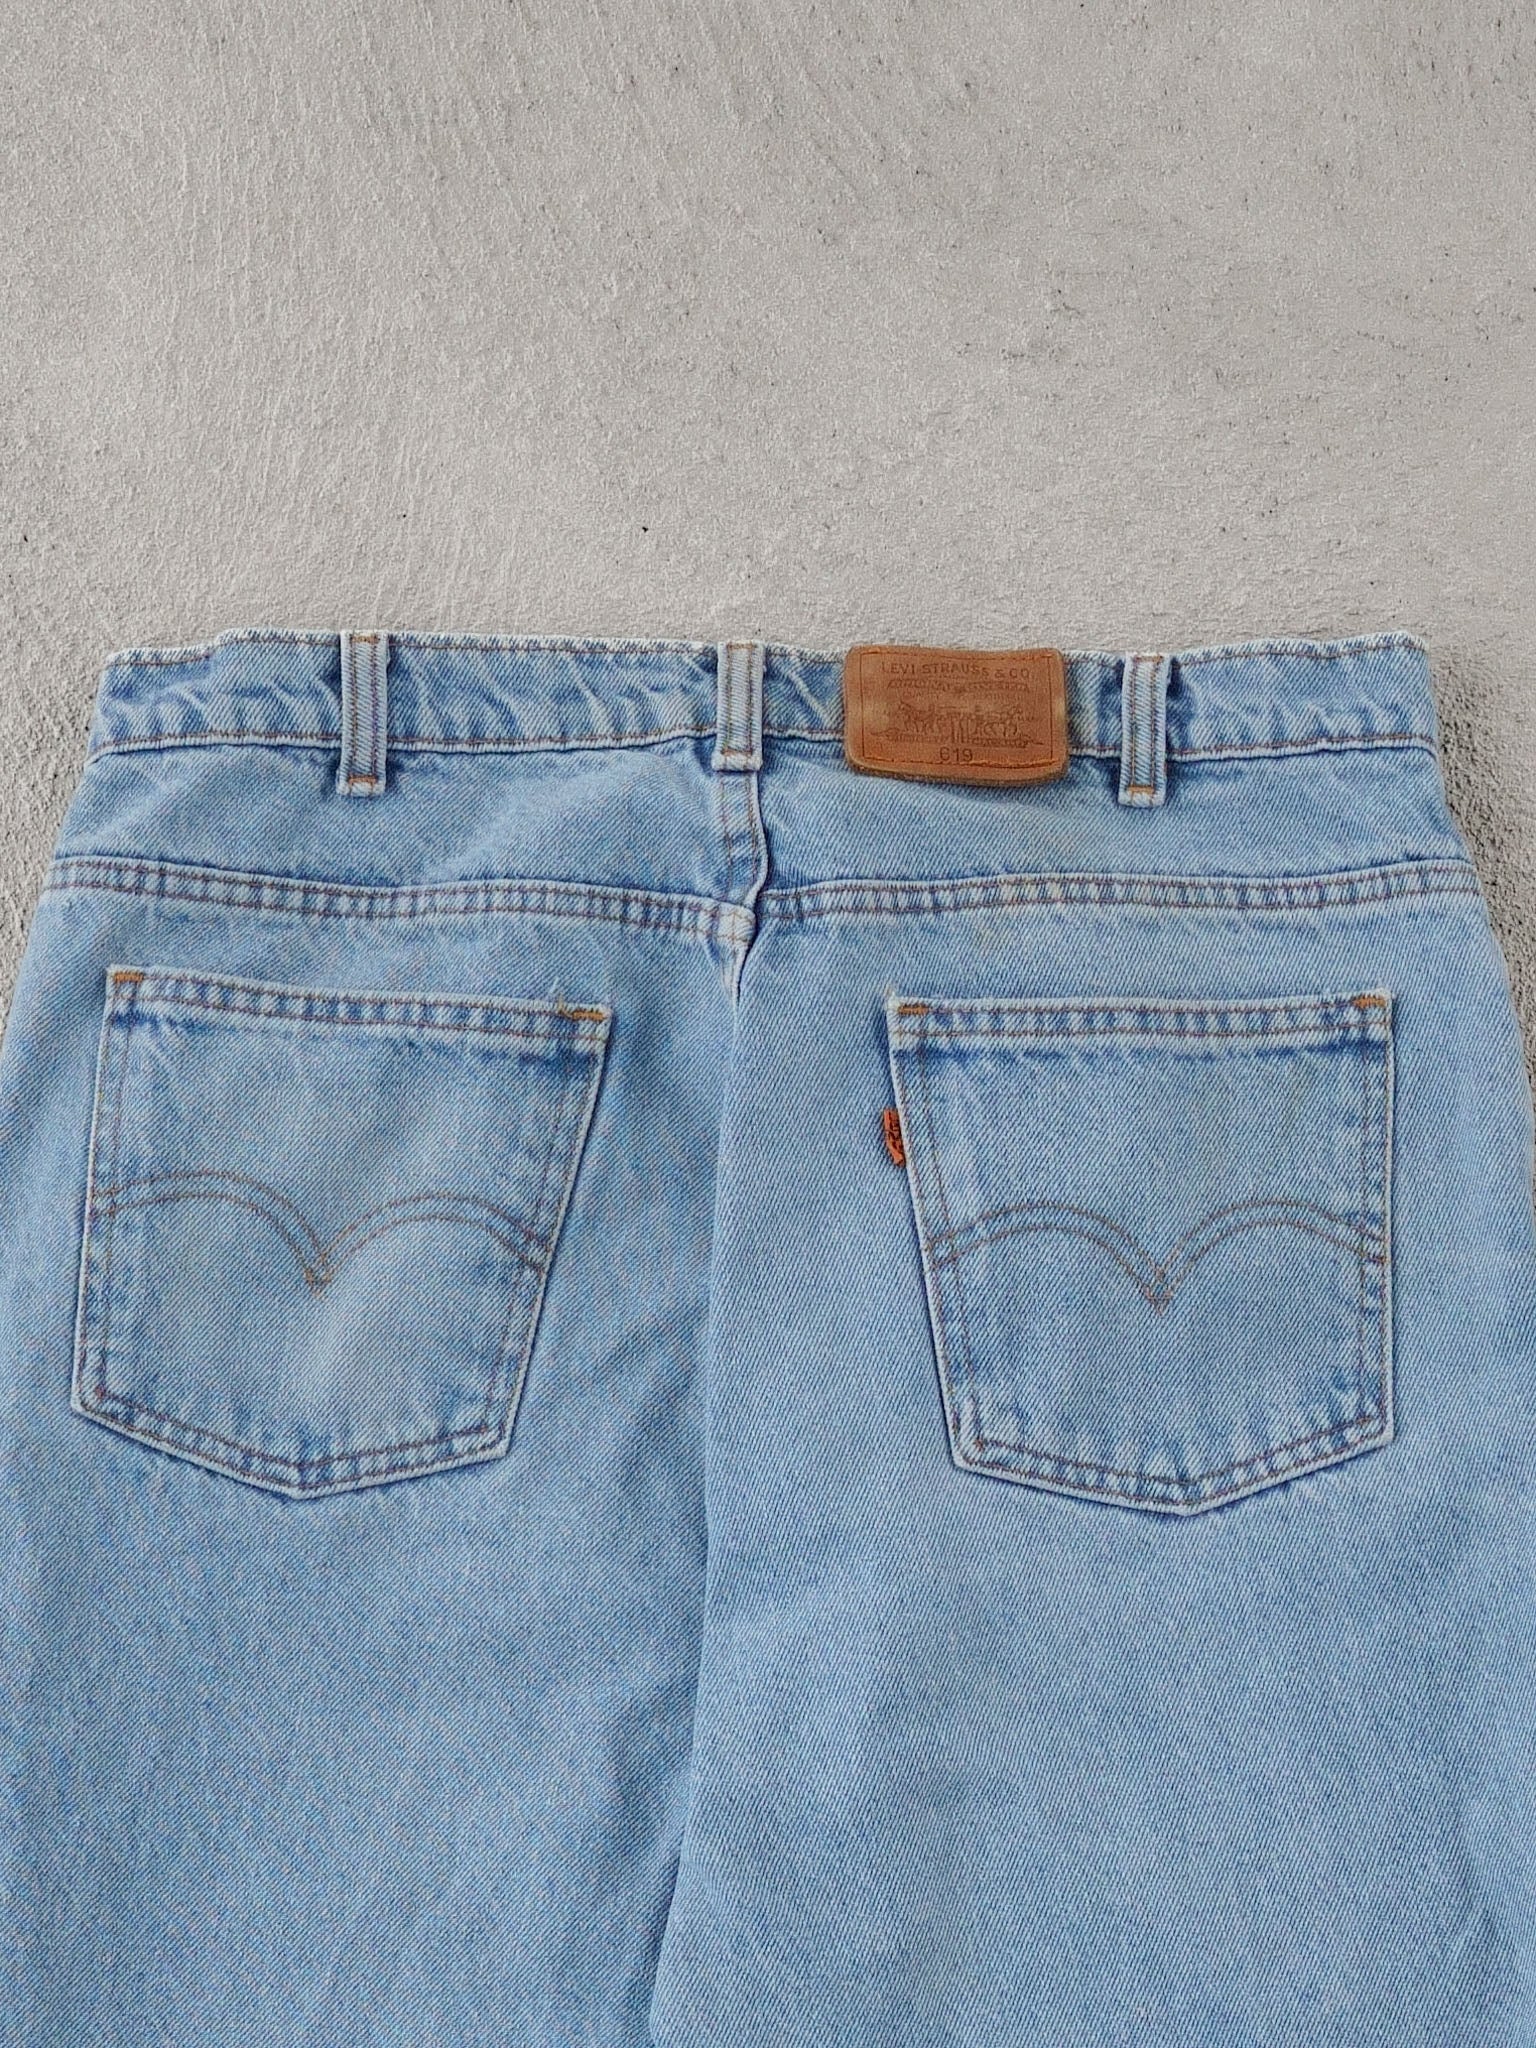 Vintage 70s Light Blue Levi's 619 Denim Jeans (34x30)